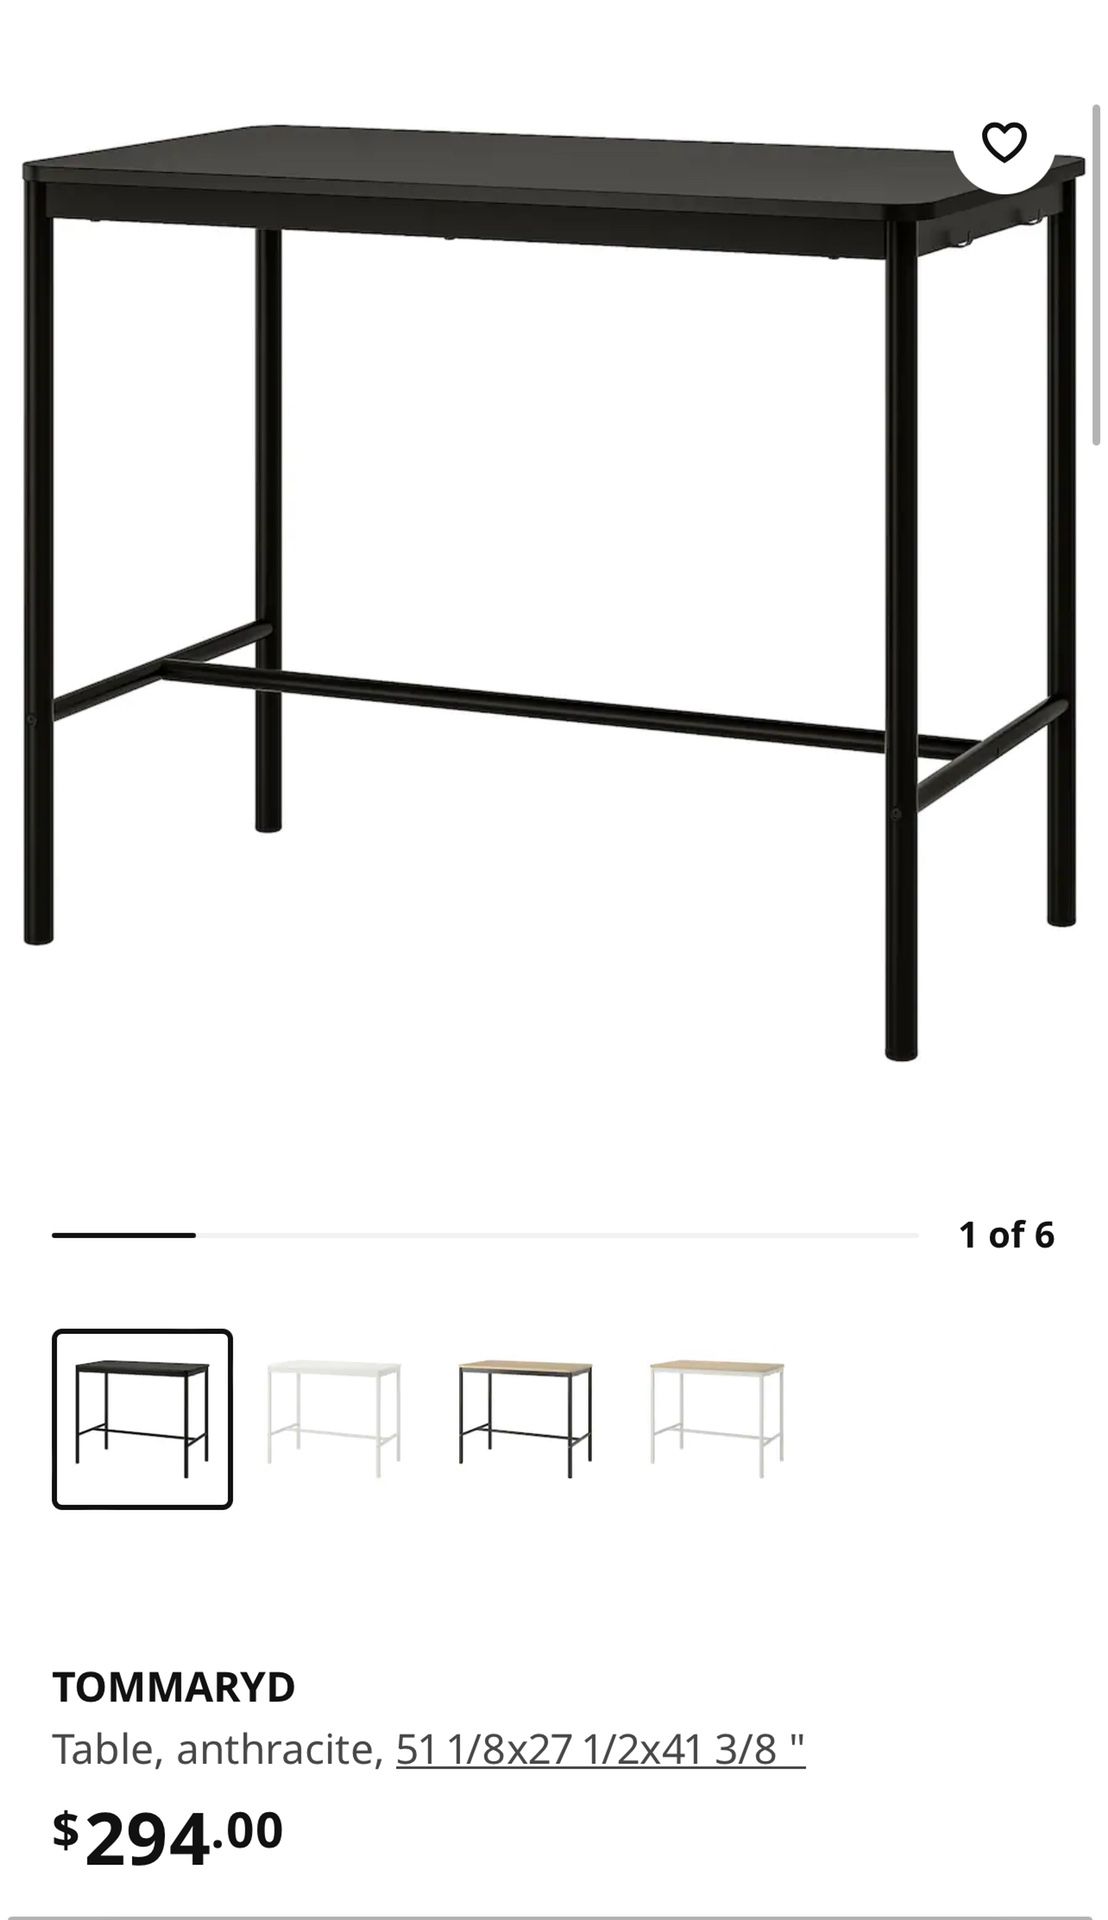 Tommaryd IKEA Bar Table